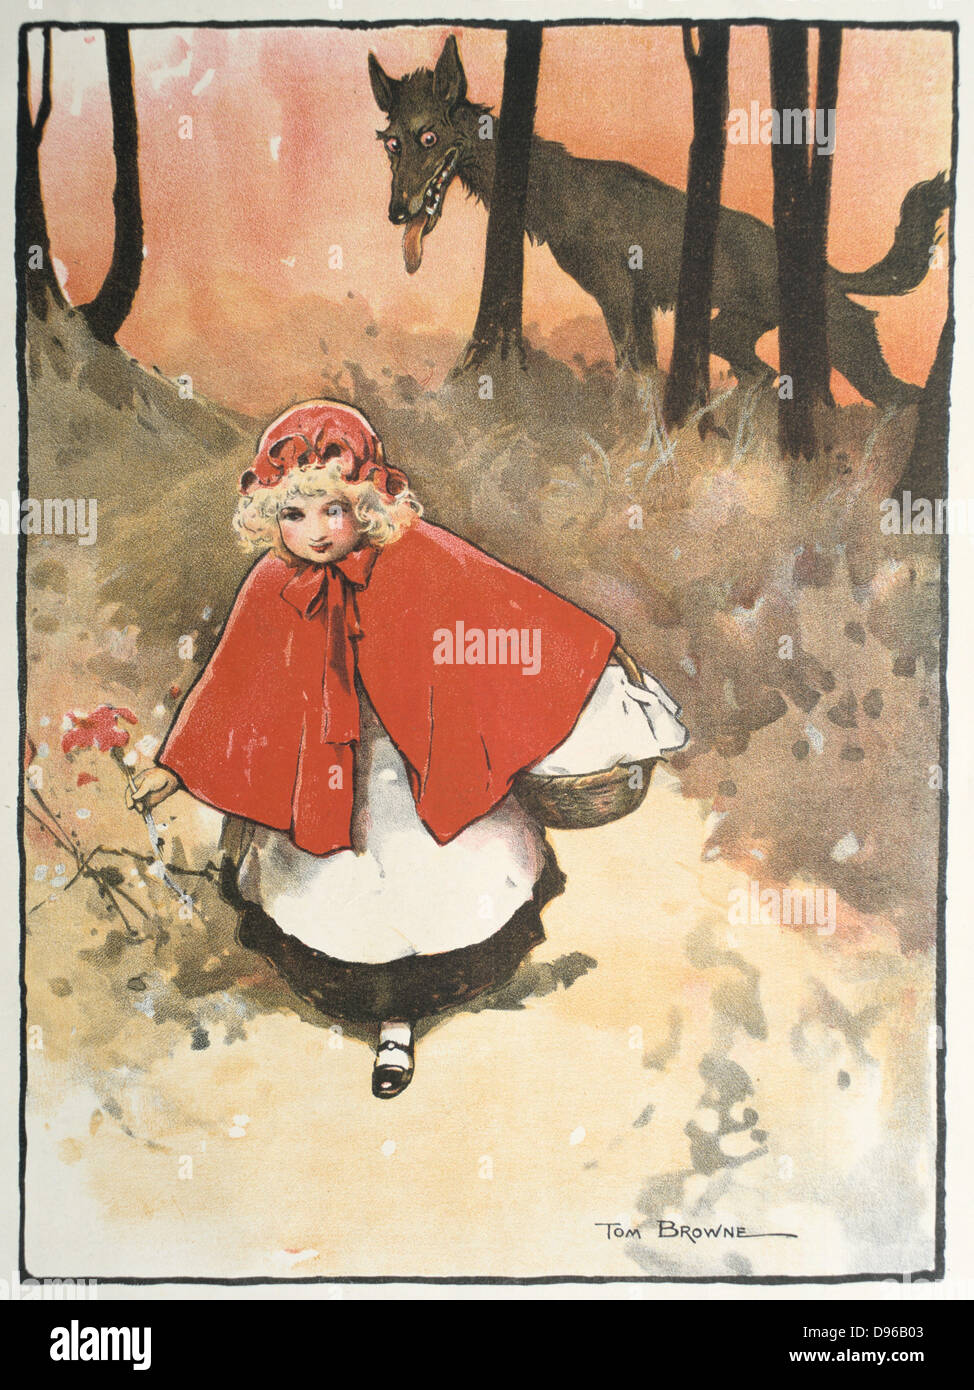 Rotkäppchen auf dem Weg zu ihrer Großmutter beobachtet durch ein finsteres, leering Wolf. Abbildung von Tom Browne (1872-1910) für das Märchen. Veröffentlicht 1900 Stockfoto